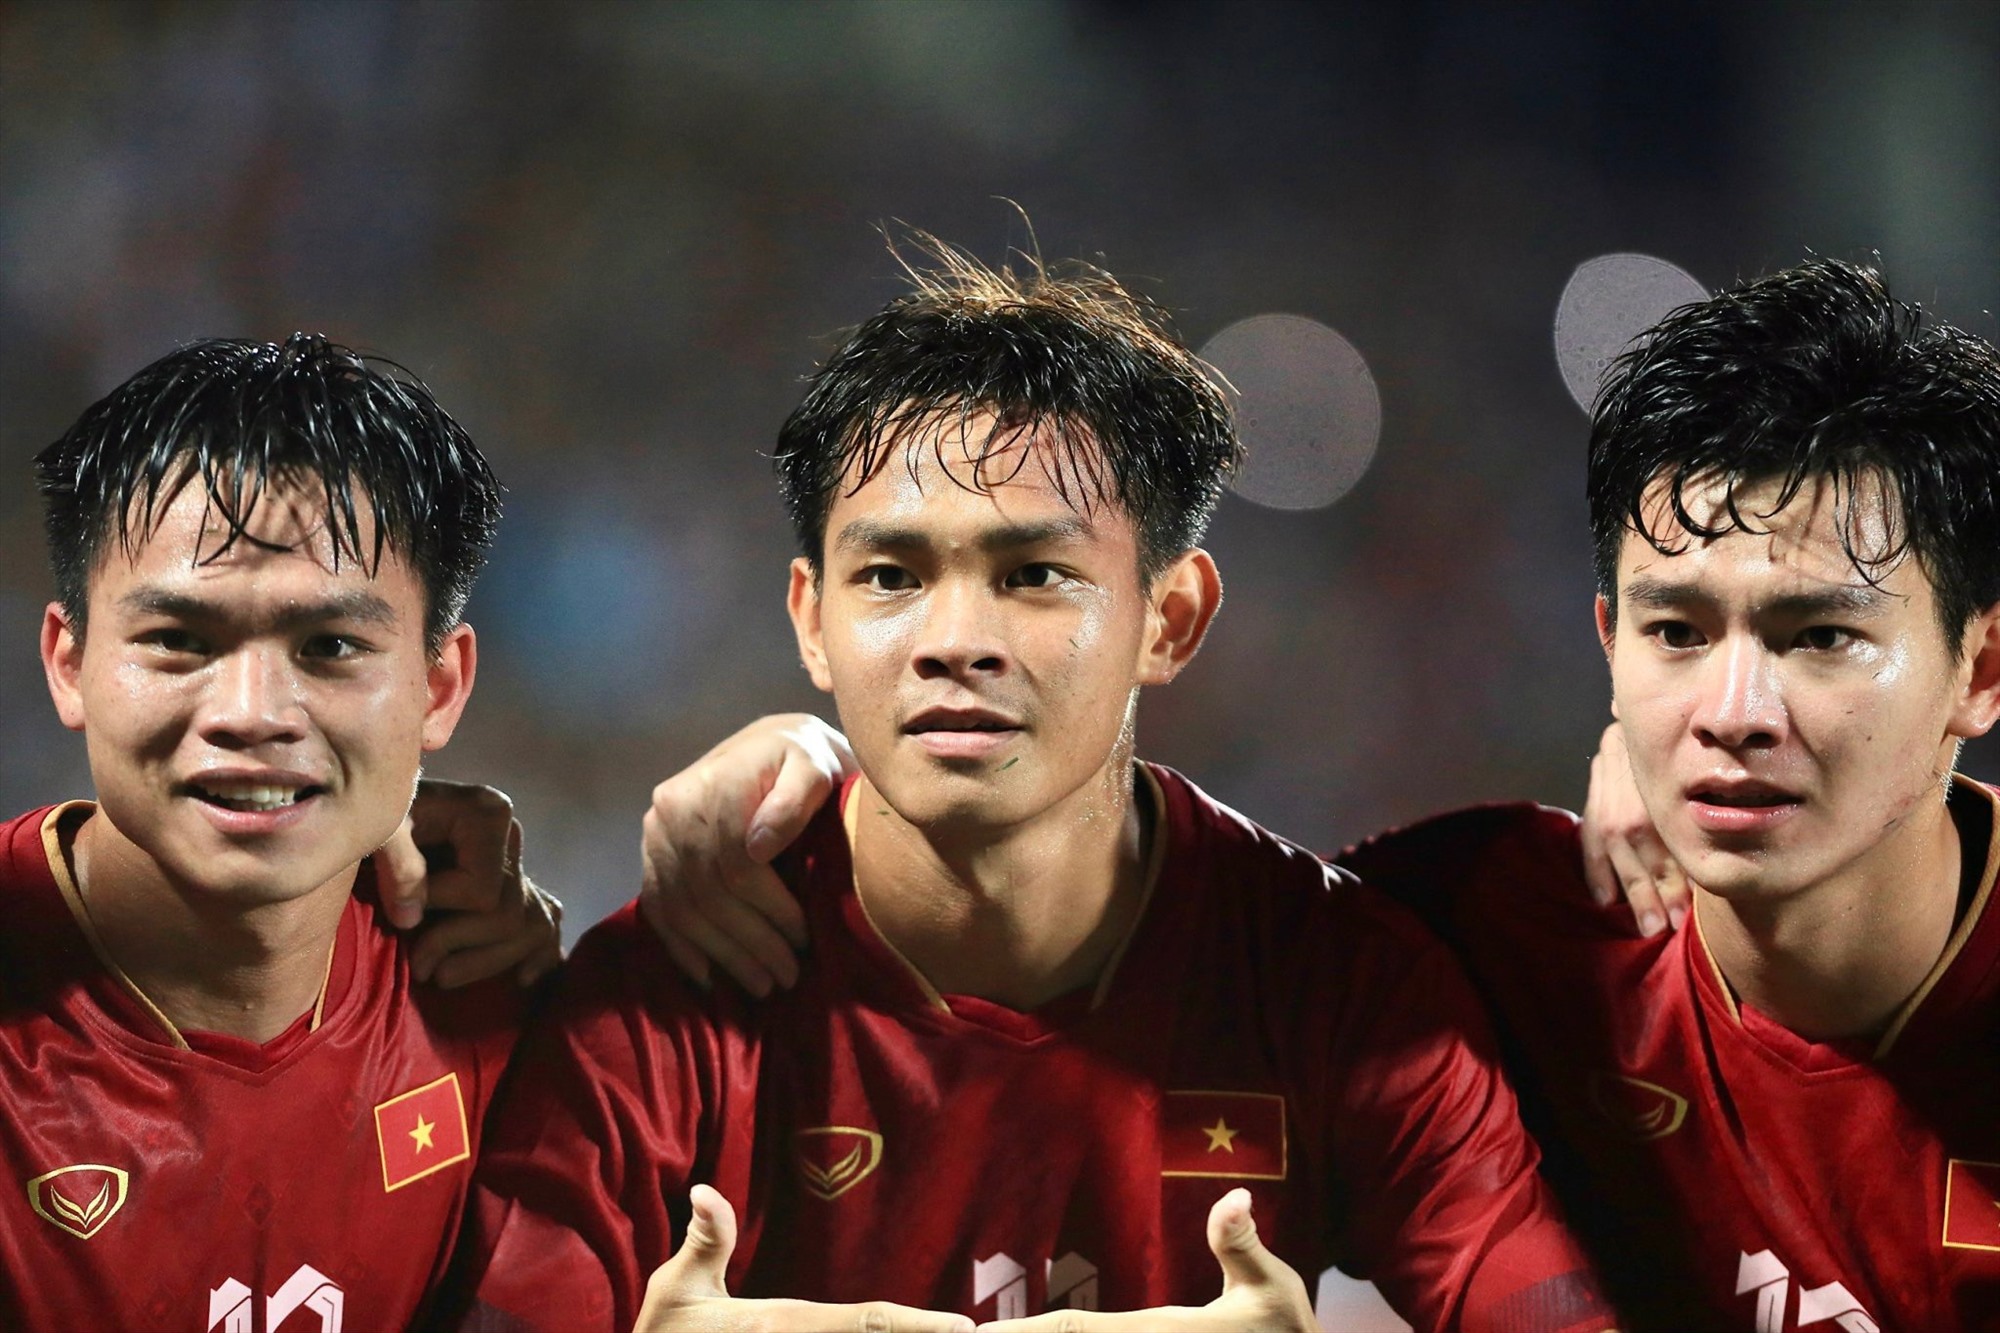 Vấn đề rút ra từ màn thể hiện của U23 Việt Nam trước U23 Yemen